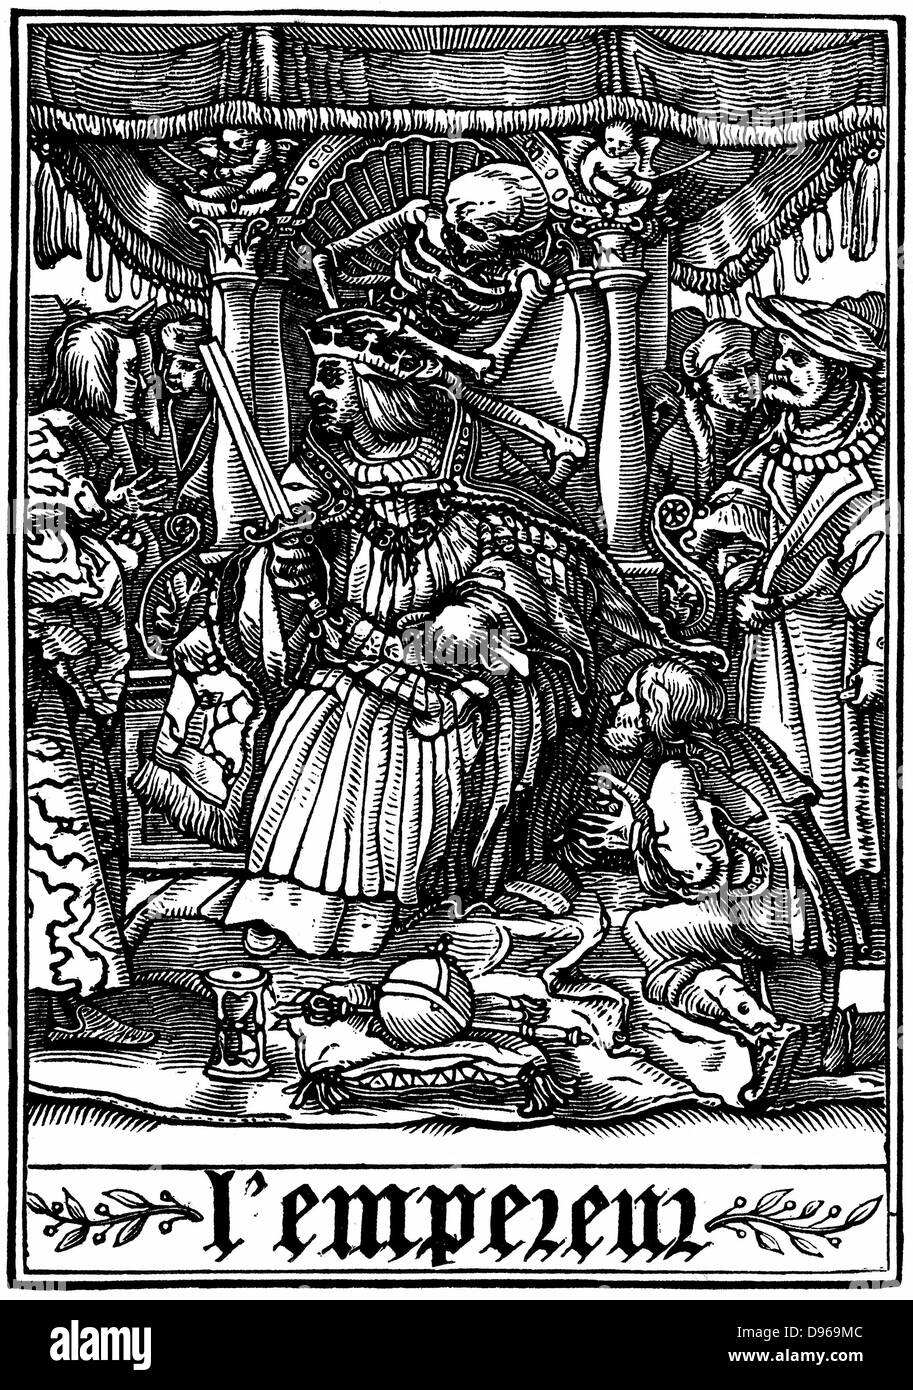 L'Empereur s'est rendu par la mort. De Hans Holbein le Jeune 'Les Simulachres de la Mort" (La danse de mort, Totentanz). Série d'illustrations à la suite de la tradition de la morale médiévale joue . Gravure sur bois, 1538 Banque D'Images